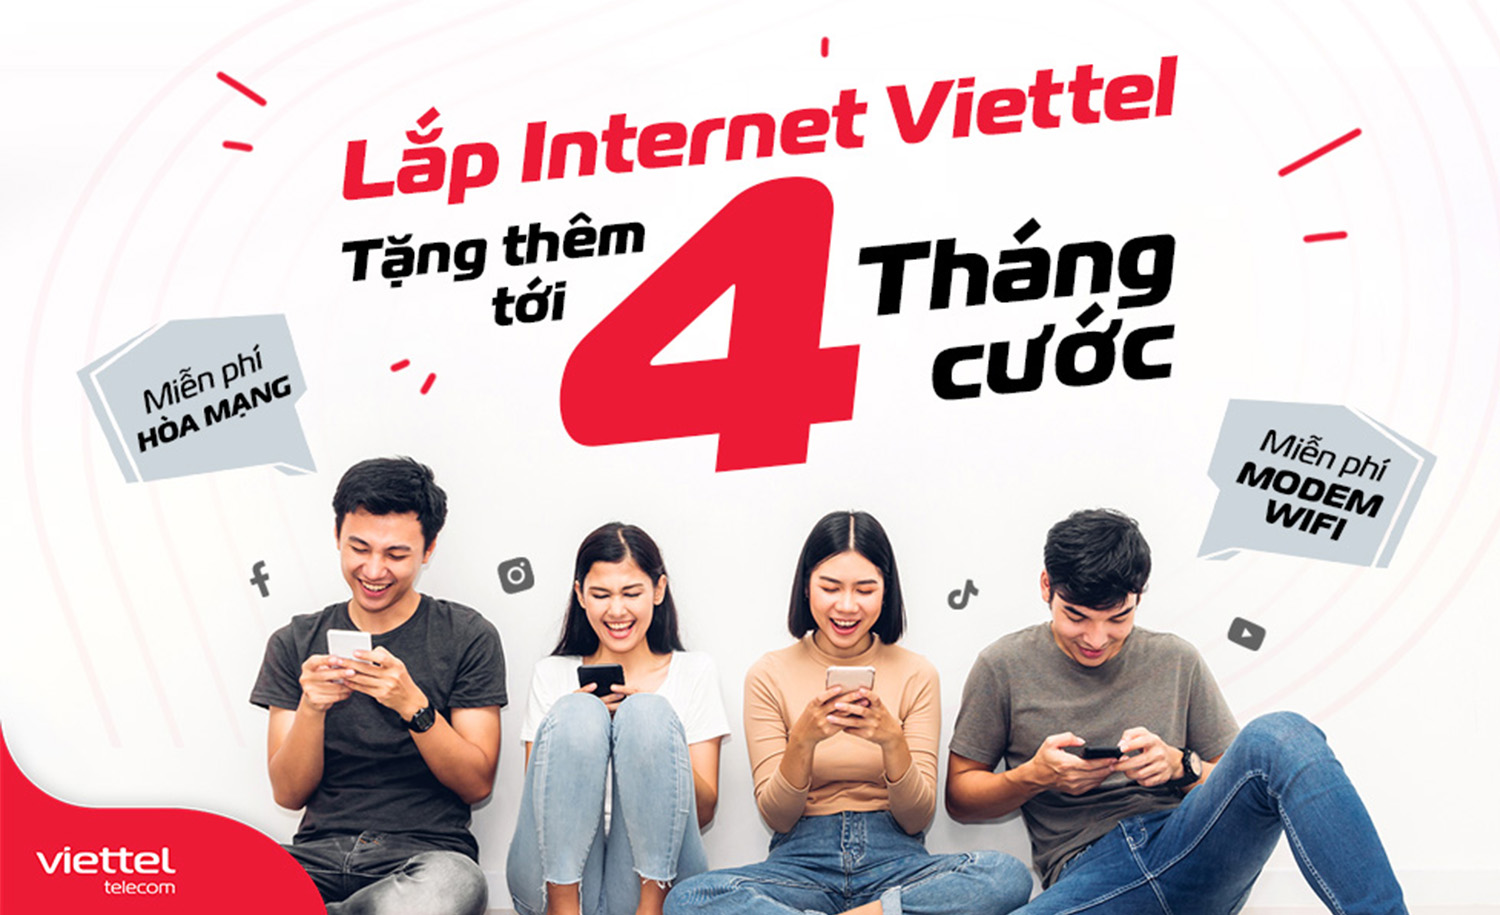 Top 7 Gói Cước Lắp mạng Wifi Viettel tốc độ cao - Đăng Ký Internet Viettel Biên Hòa